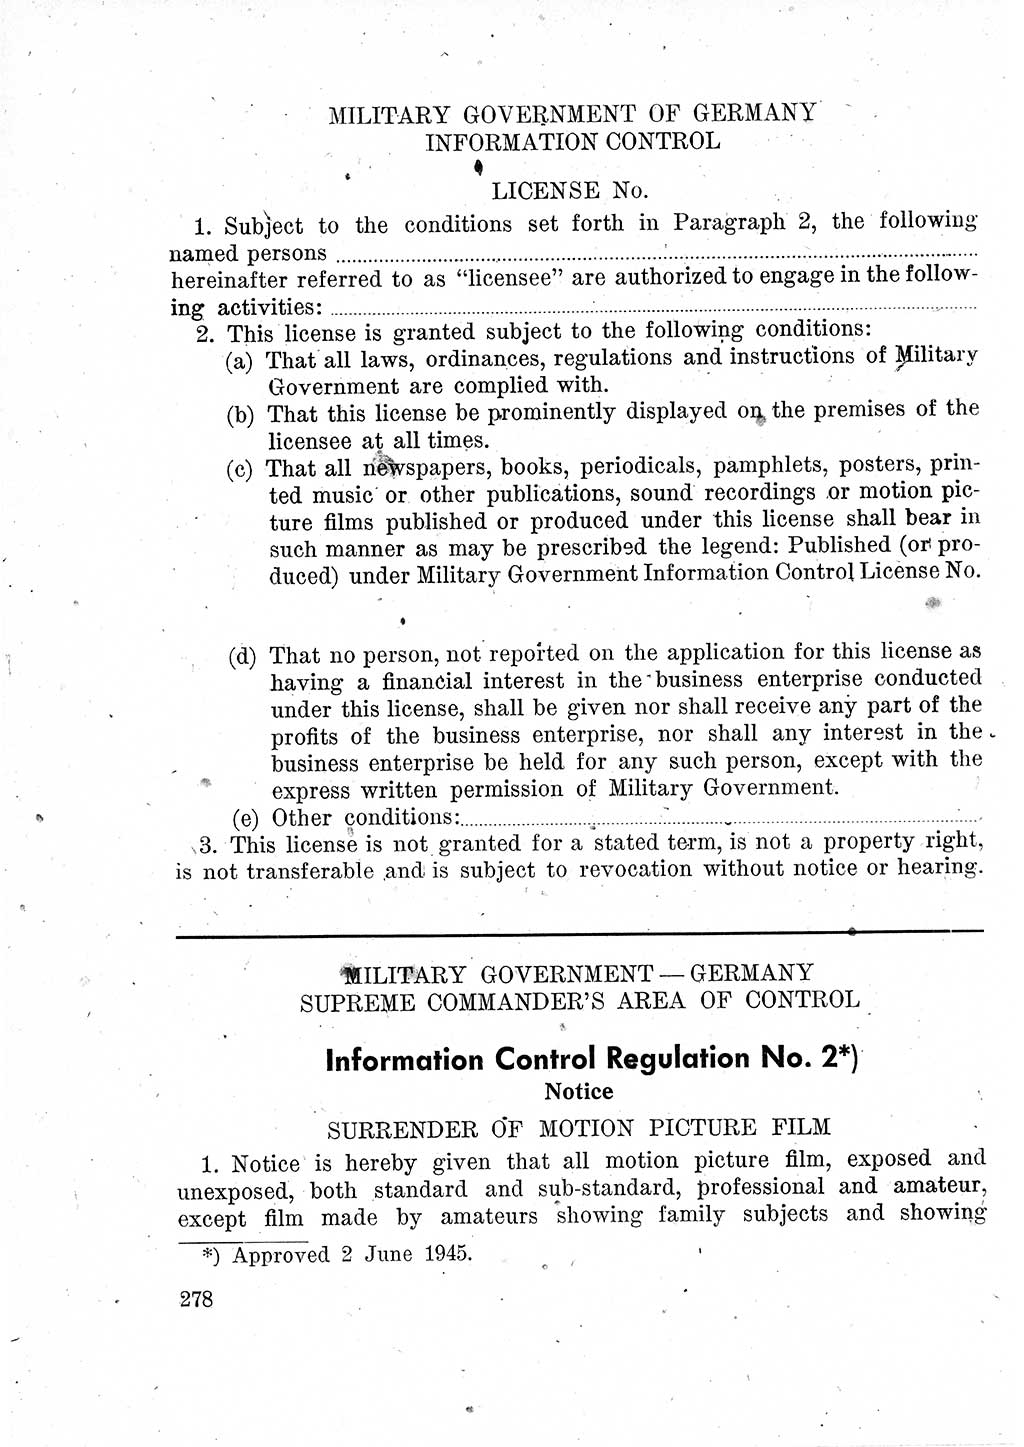 Das Recht der Besatzungsmacht (Deutschland), Proklamationen, Deklerationen, Verordnungen, Gesetze und Bekanntmachungen 1947, Seite 278 (R. Bes. Dtl. 1947, S. 278)